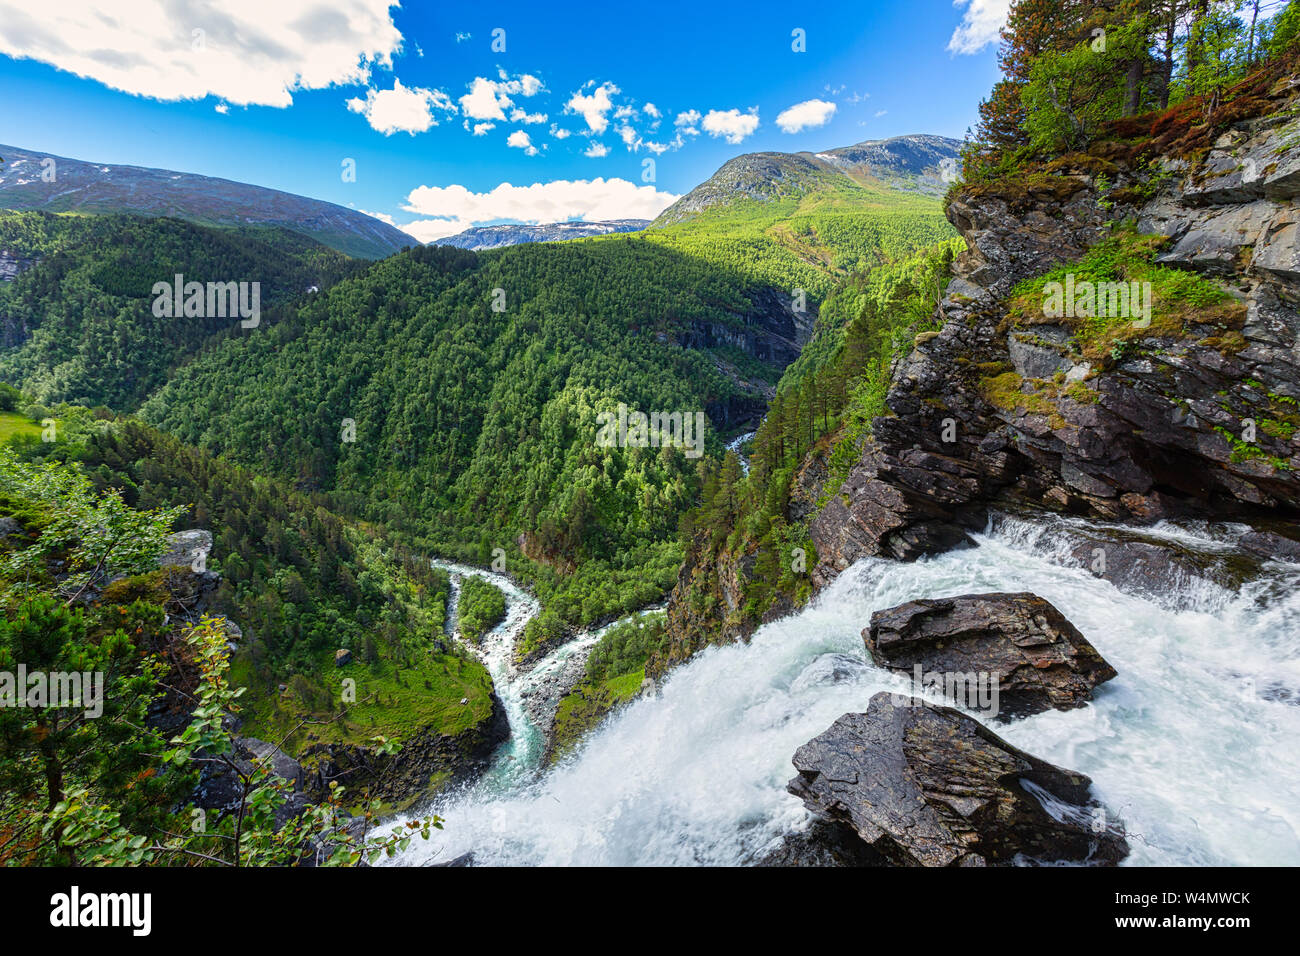 Une nature sauvage et impressionnant paysage norvégien avec montagnes, rivières, forêts en été - une destination populaire - Norvège Banque D'Images